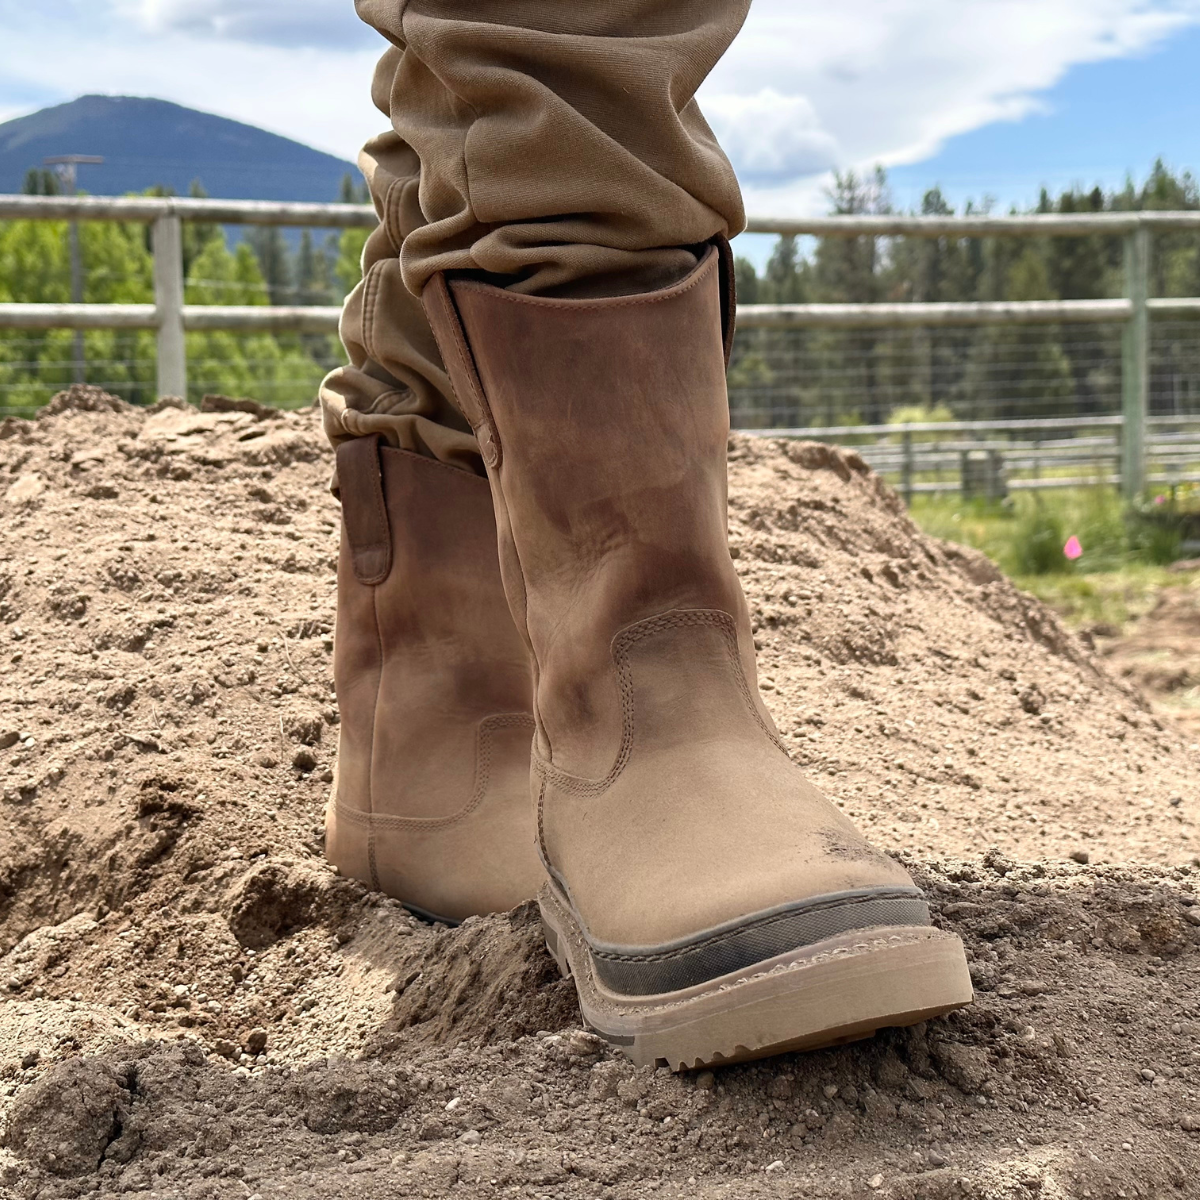 Rancher 11” Soft Toe Men’s Waterproof Work Boot - Brown